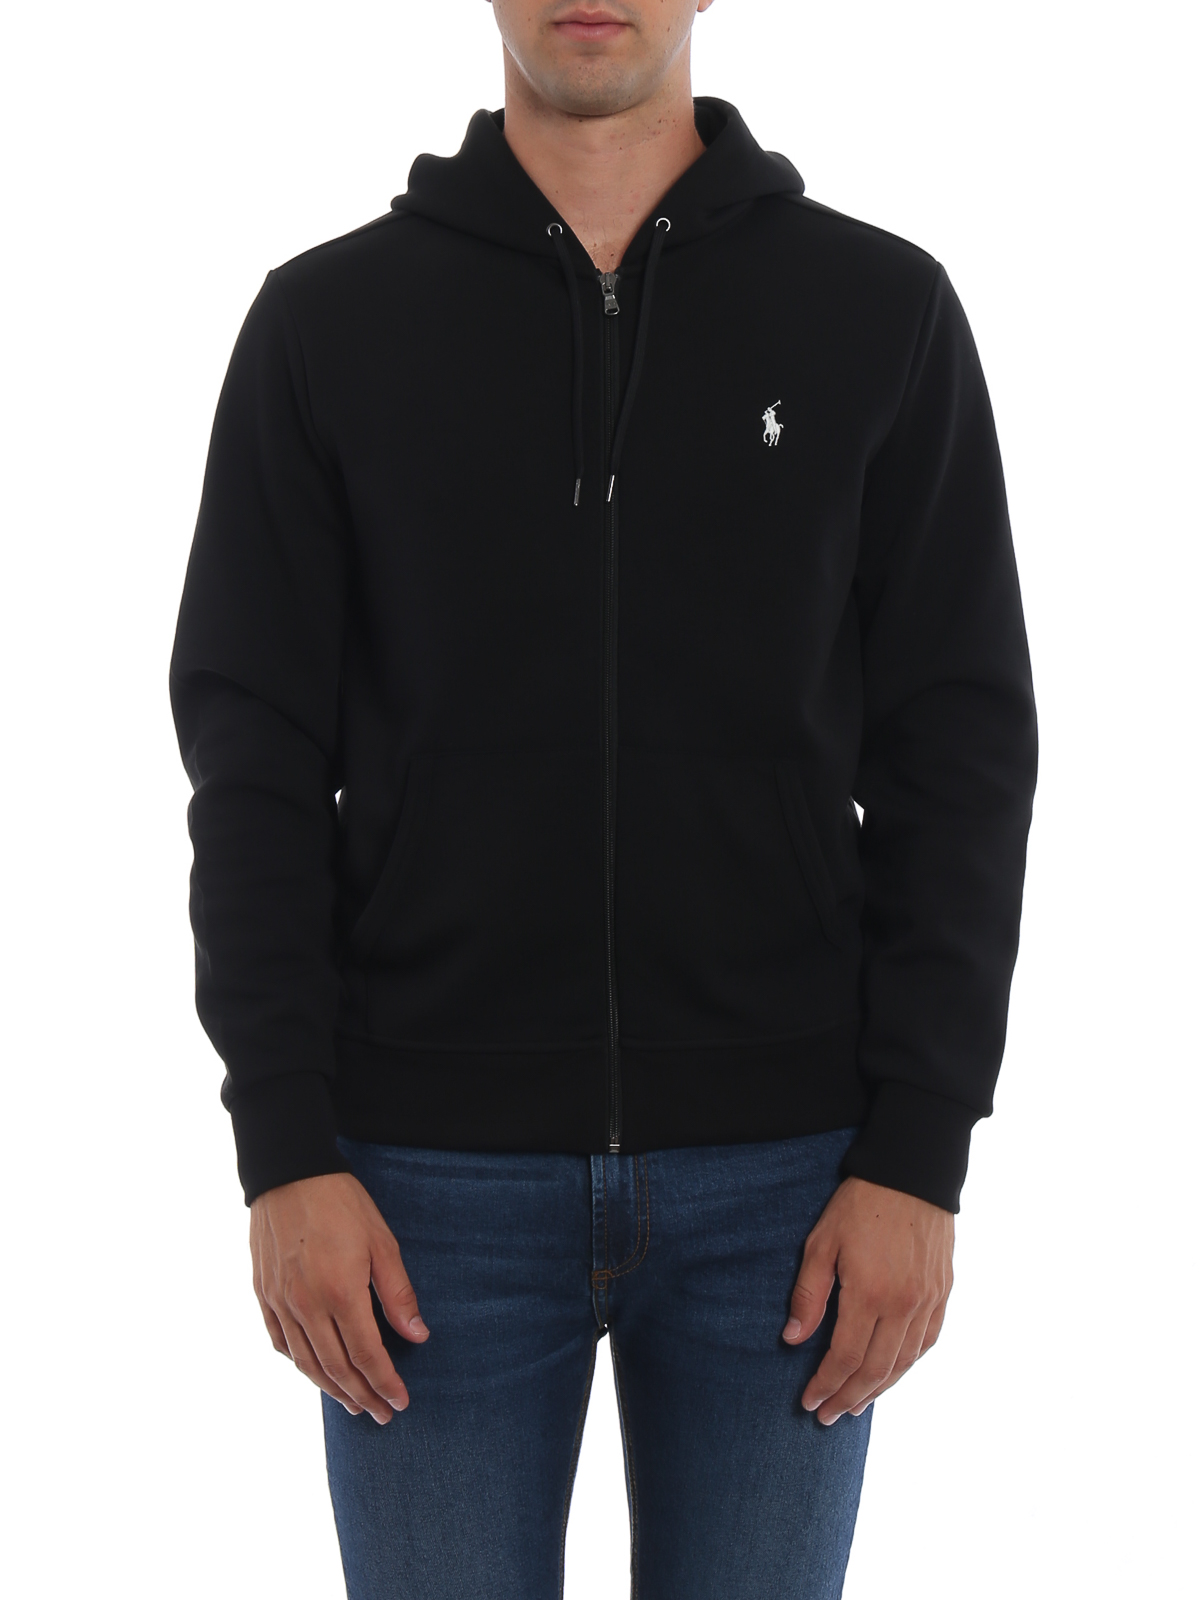 Sweatshirts & Sweaters Polo Ralph Lauren - Black full zip hoodie -  710652313001